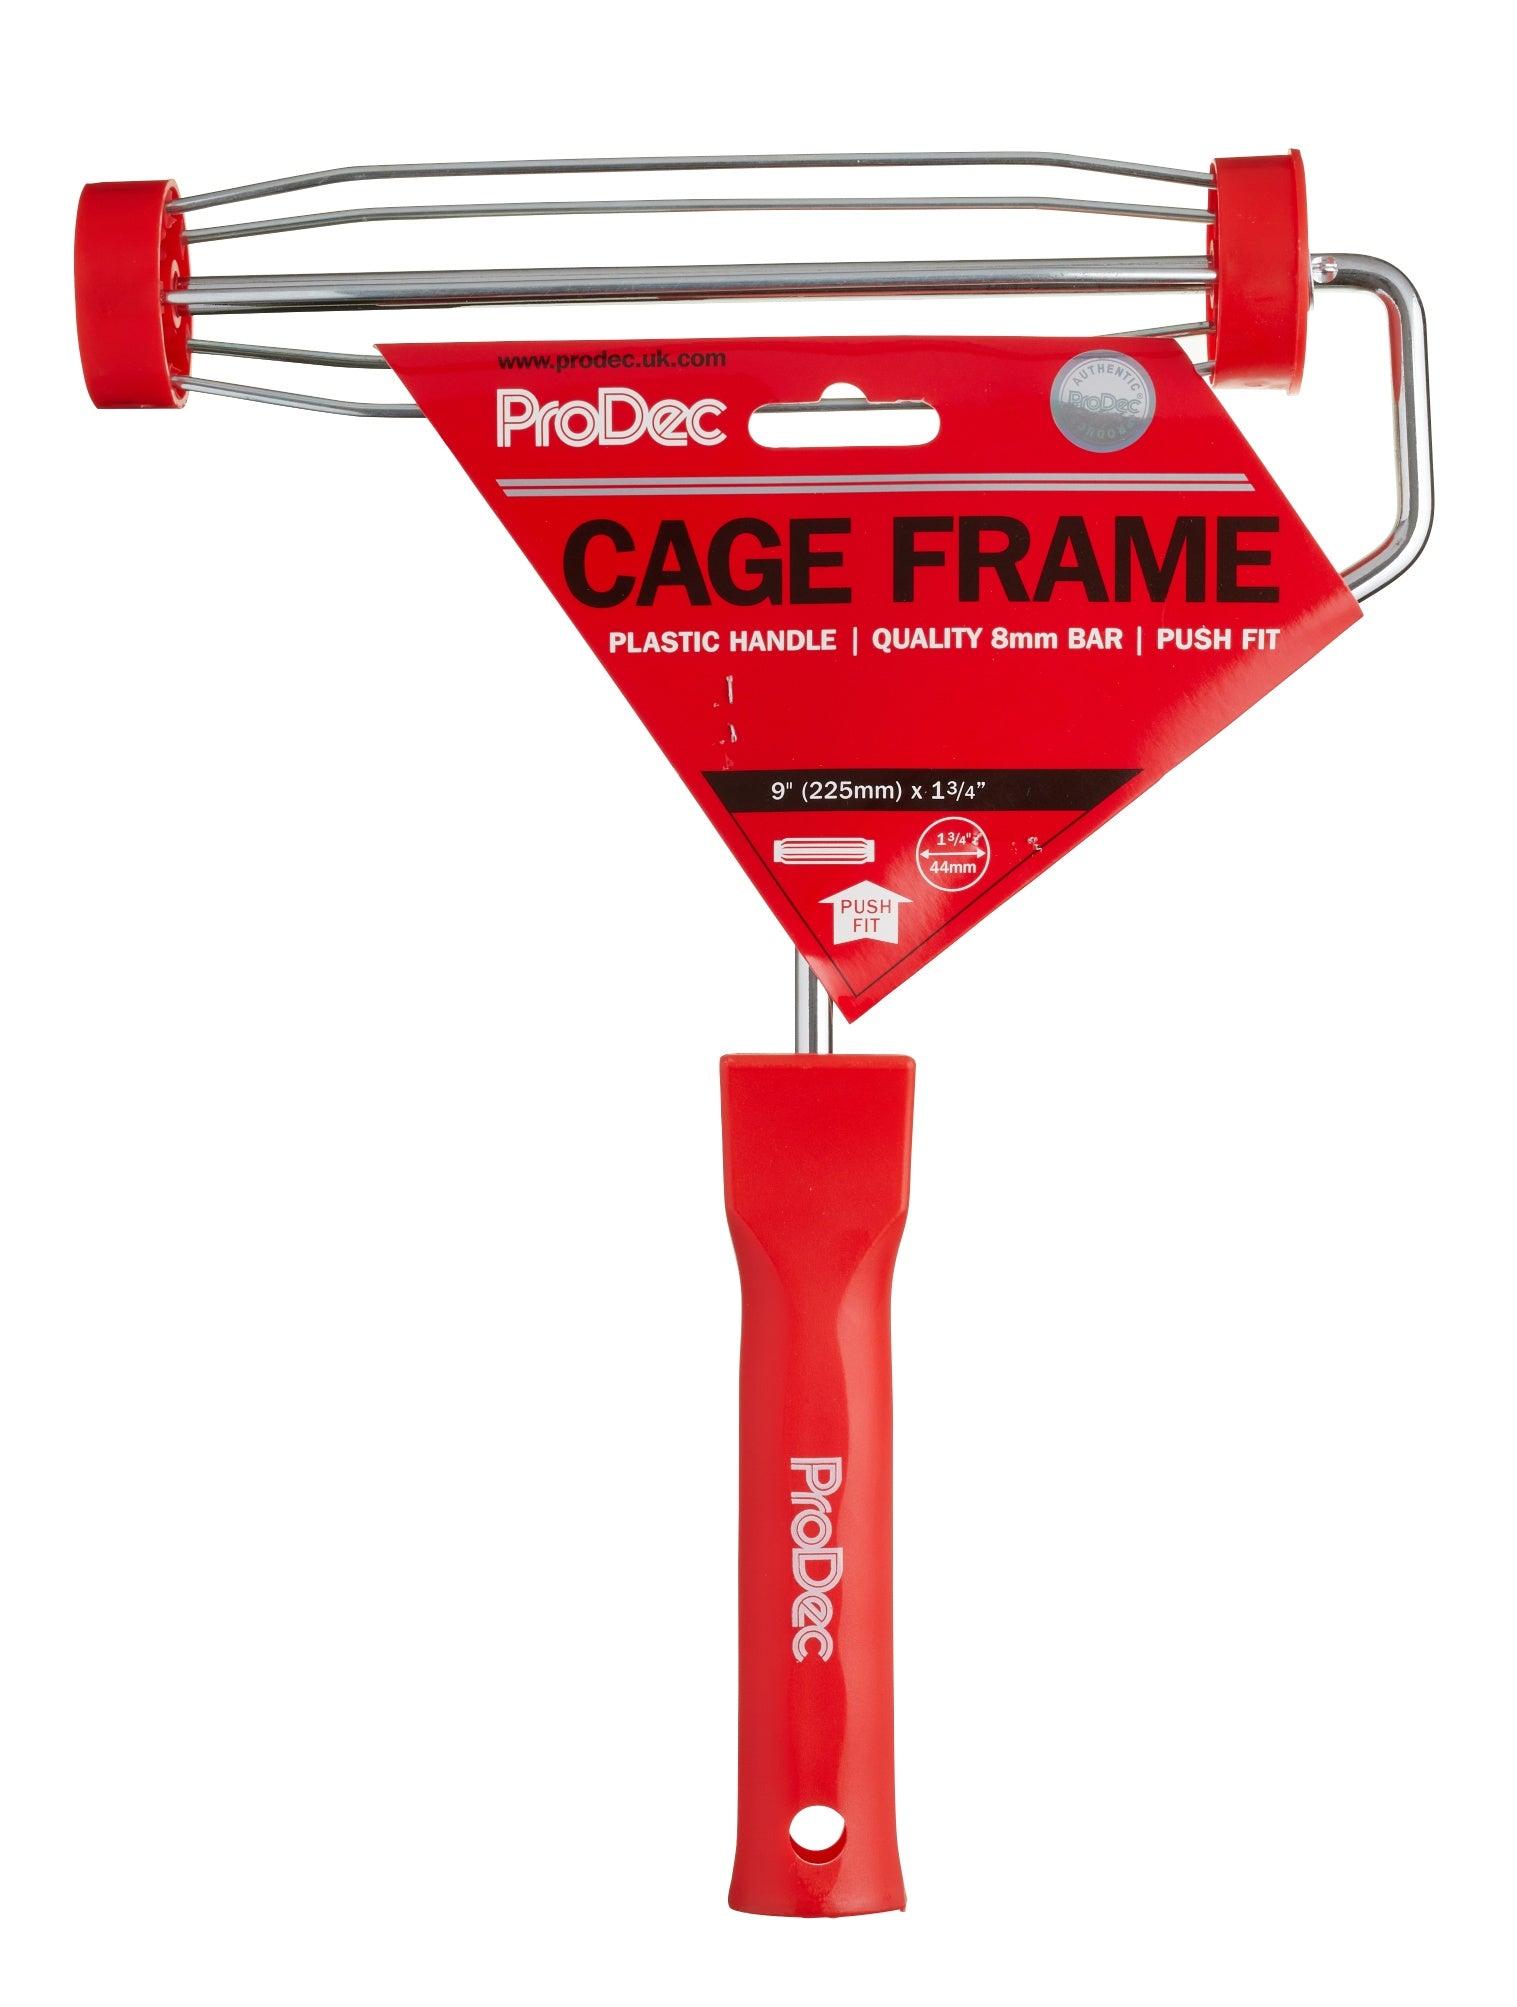 Prodec 9" Roller Cage Frame Push Fit